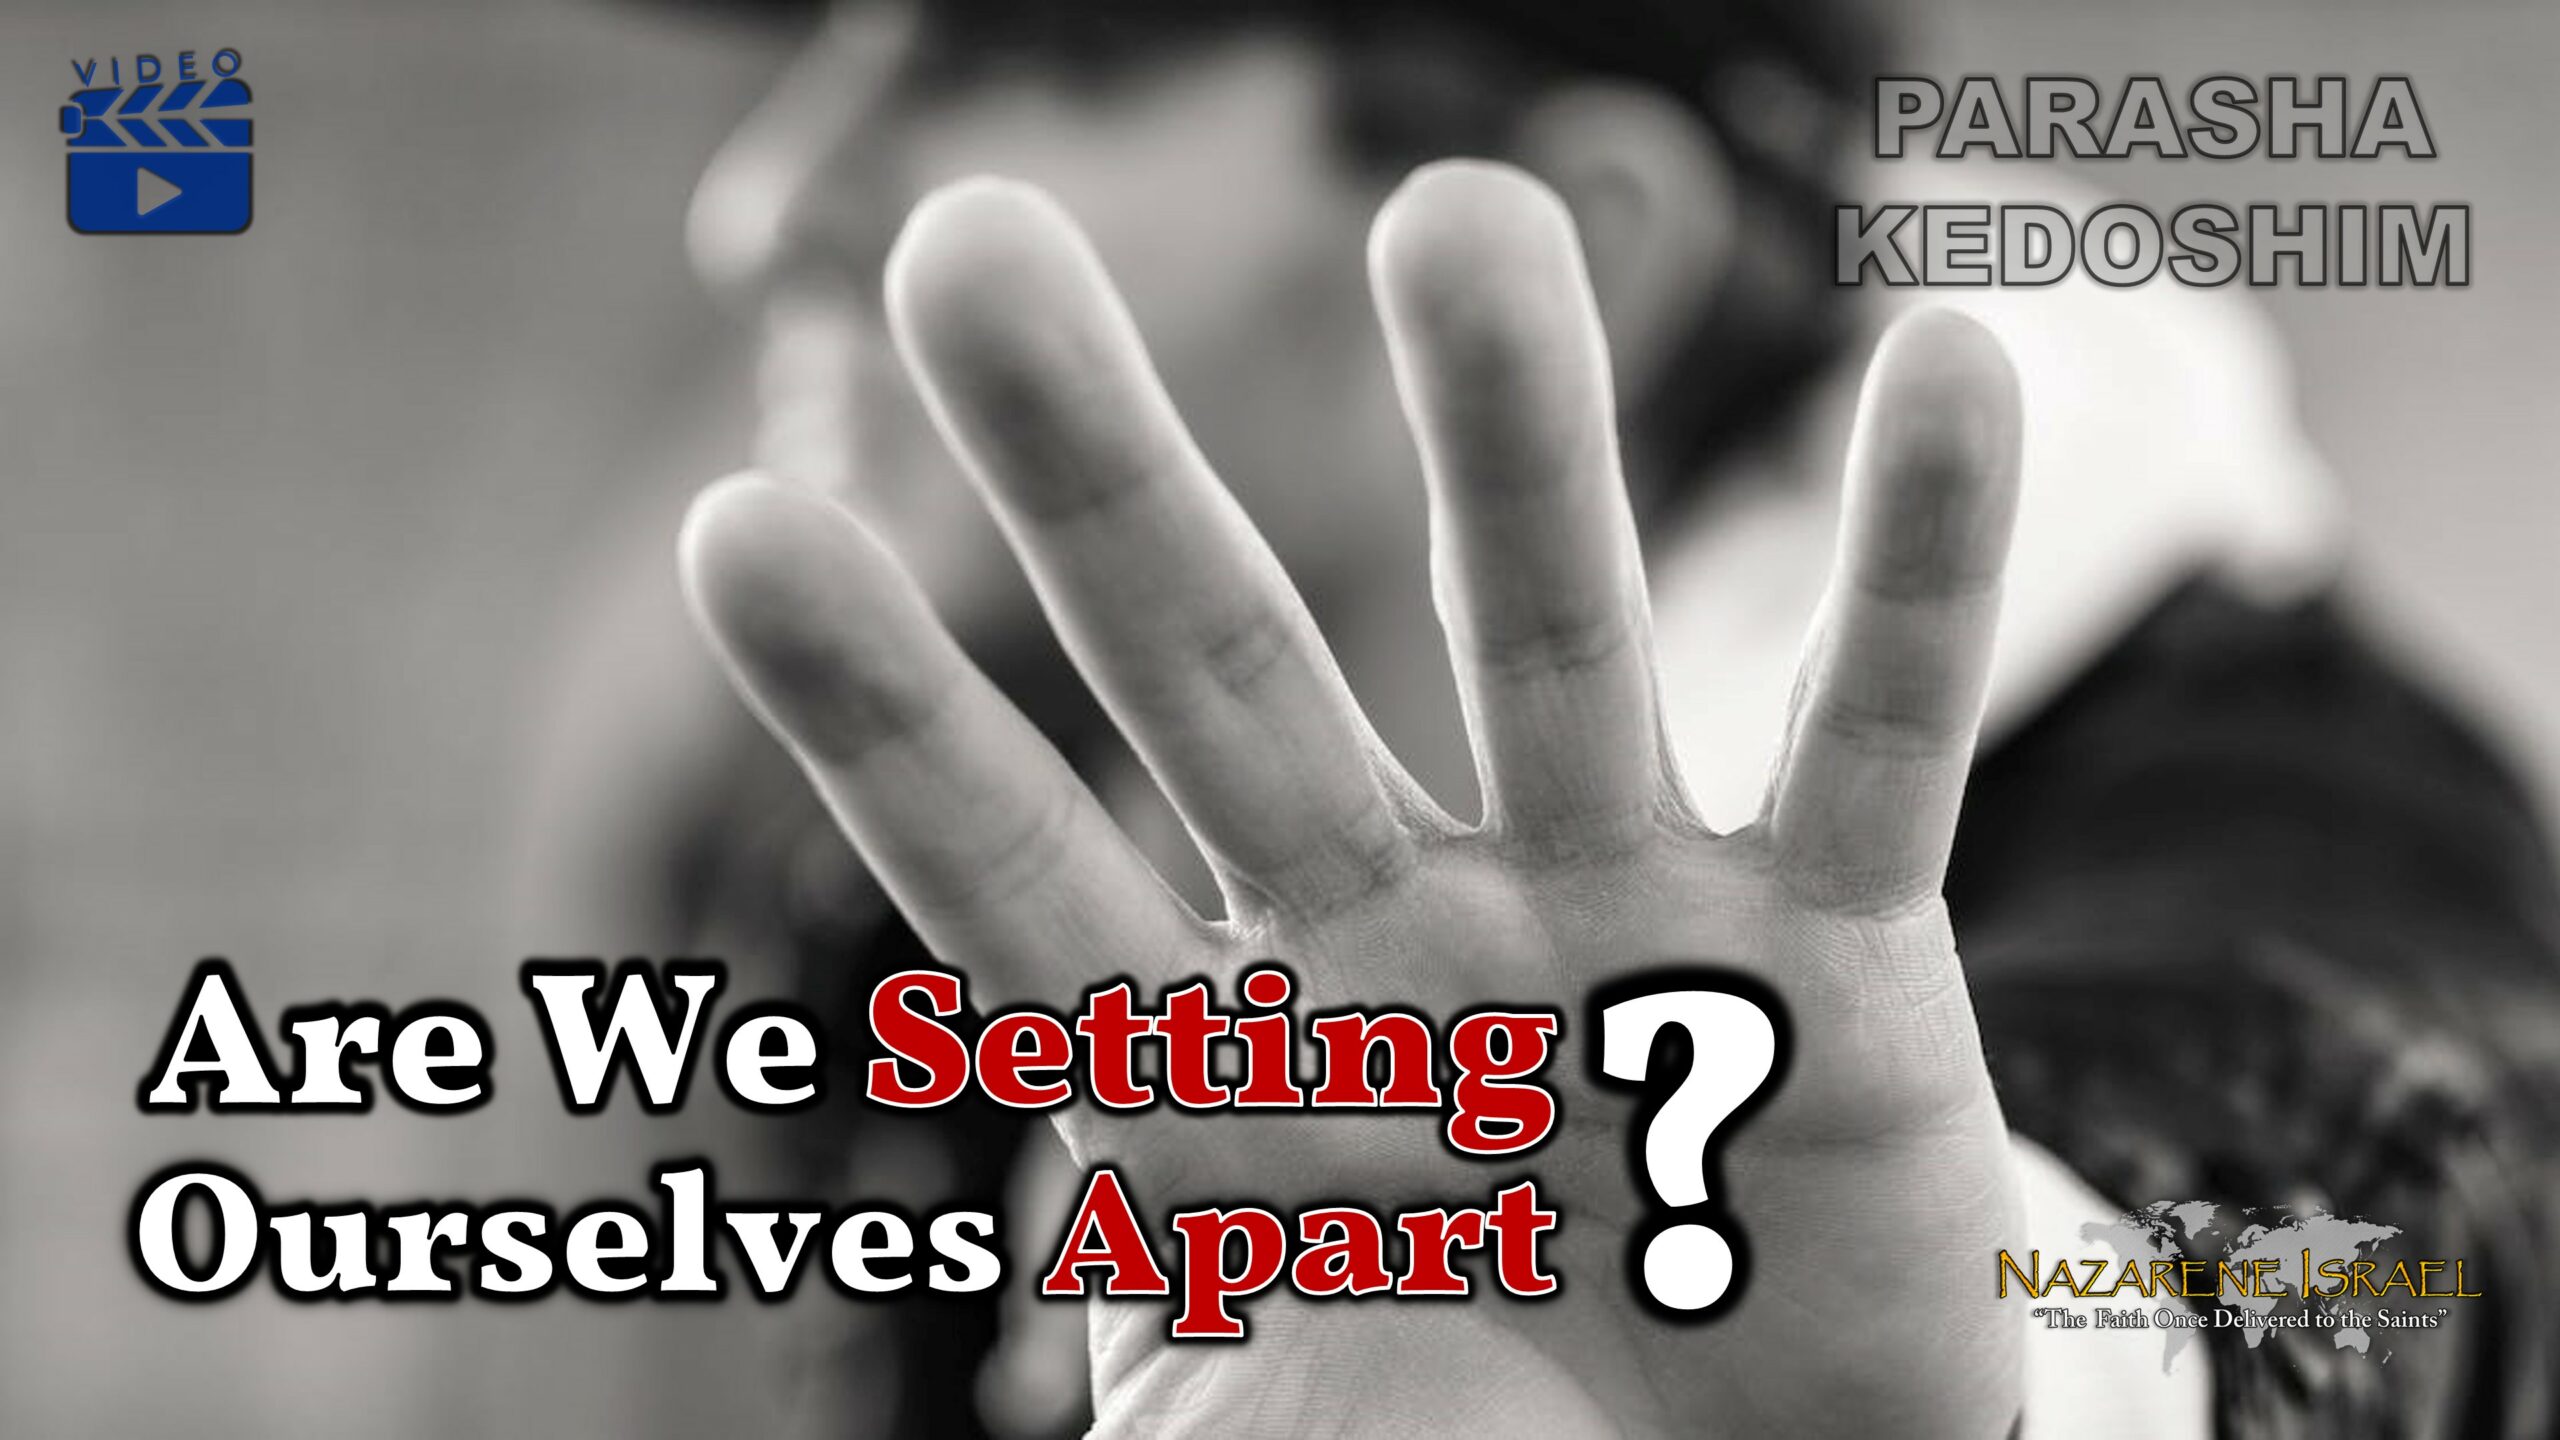 Parasha Kedoshim 2022: Are We Setting Ourselves Apart?